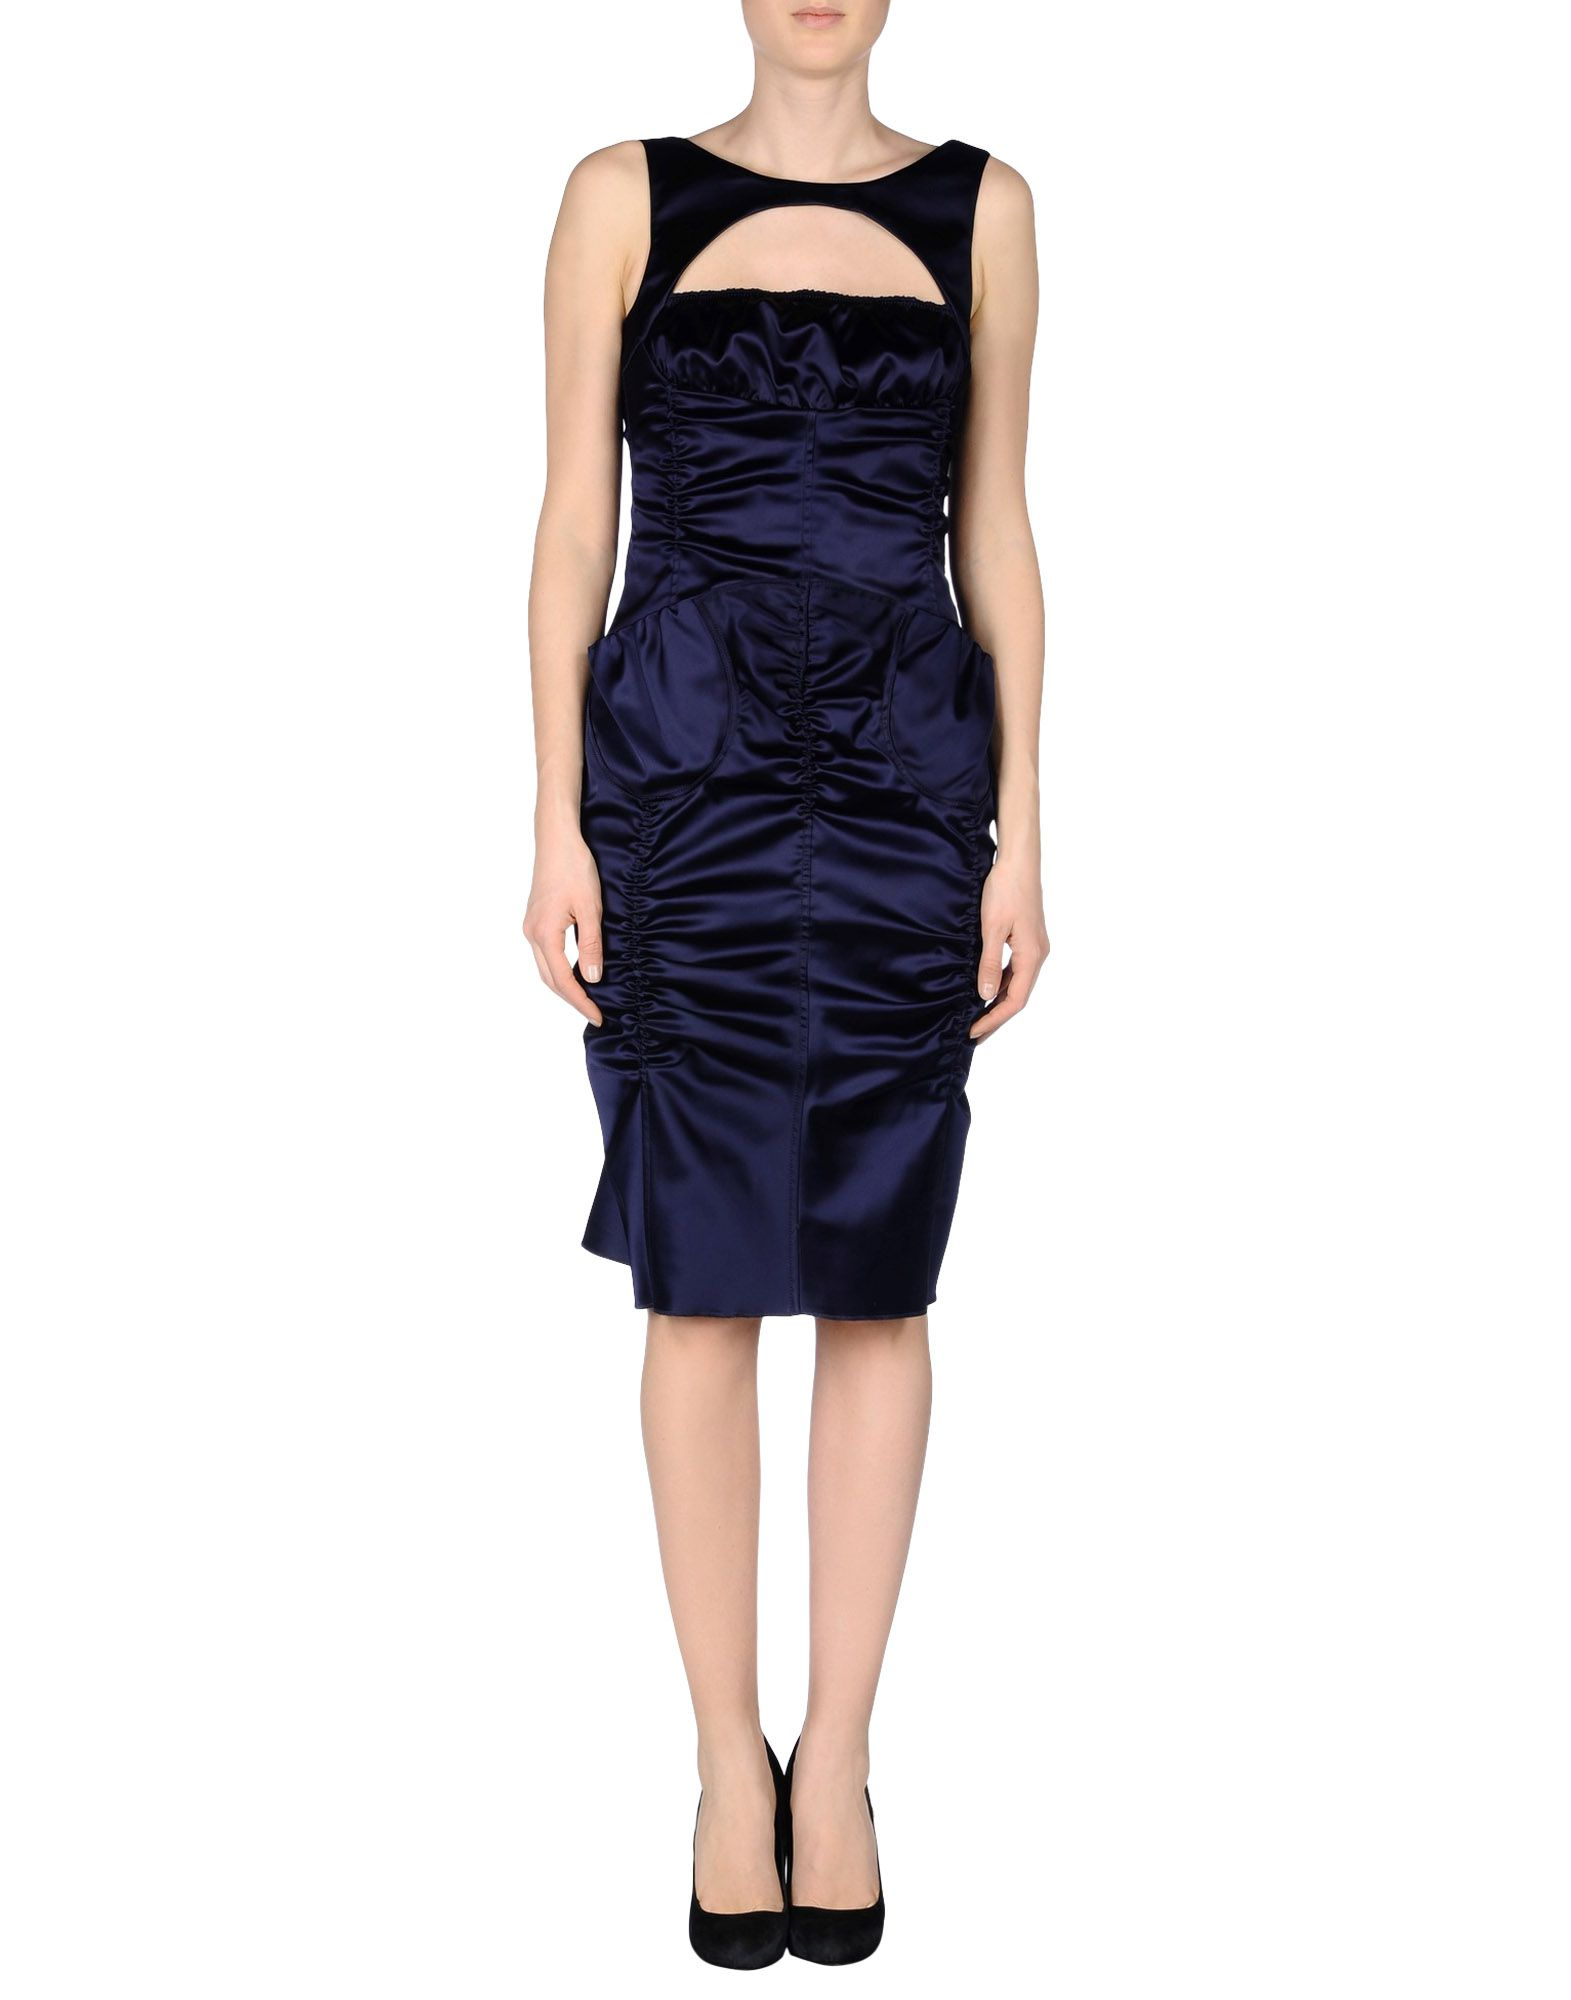 Lyst - Nina Ricci Jacquard Dress in Blue